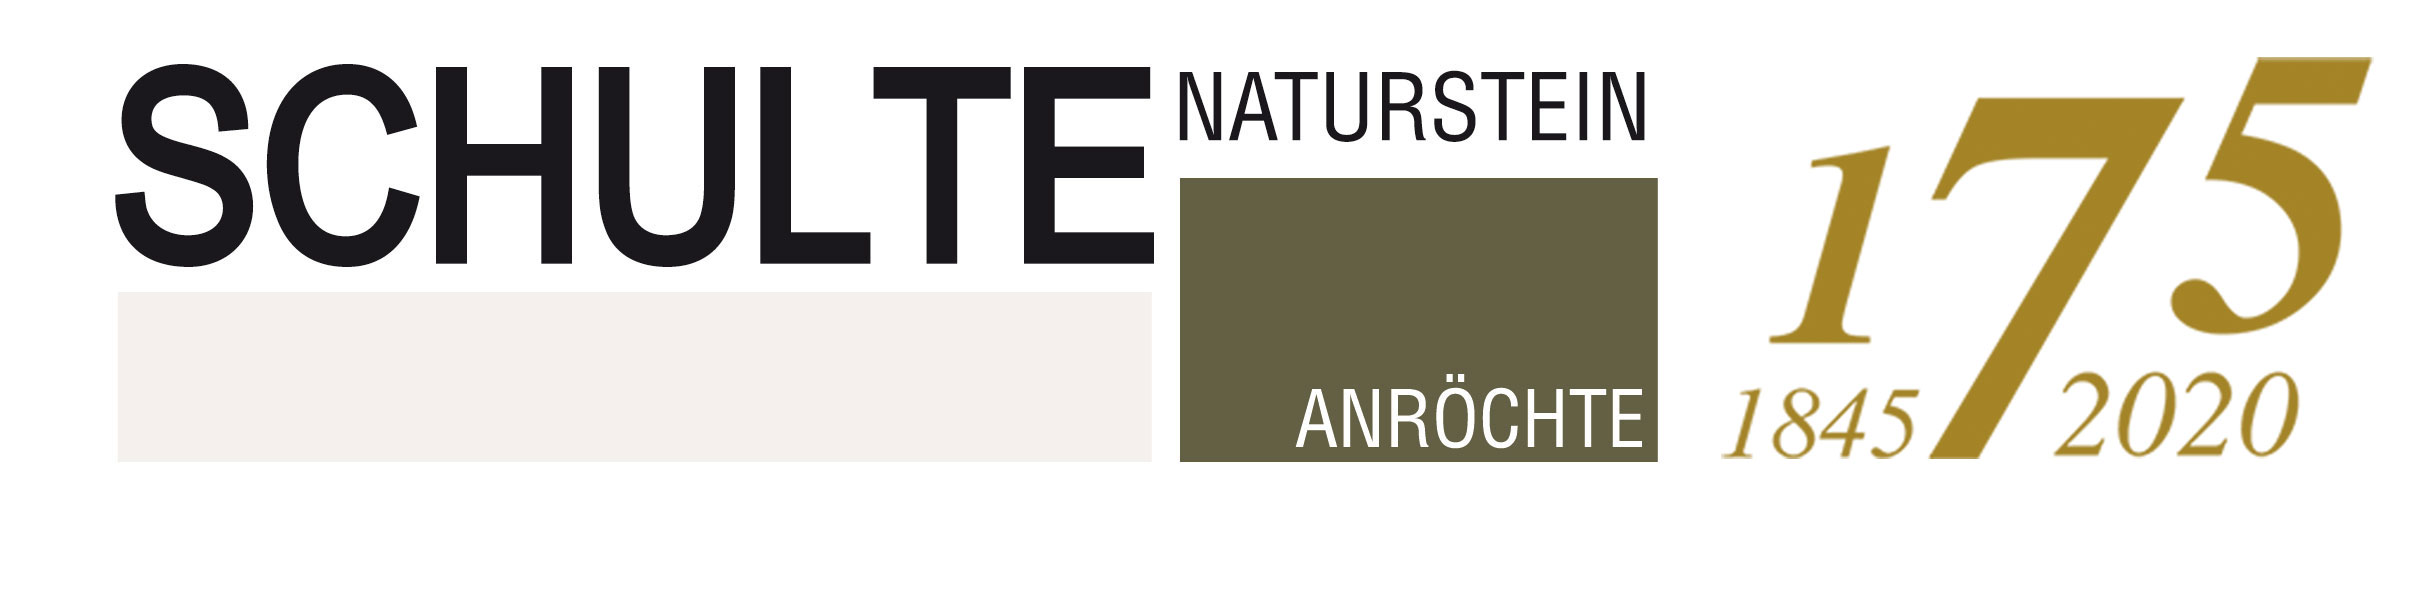 Logo-Schulte Naturstein